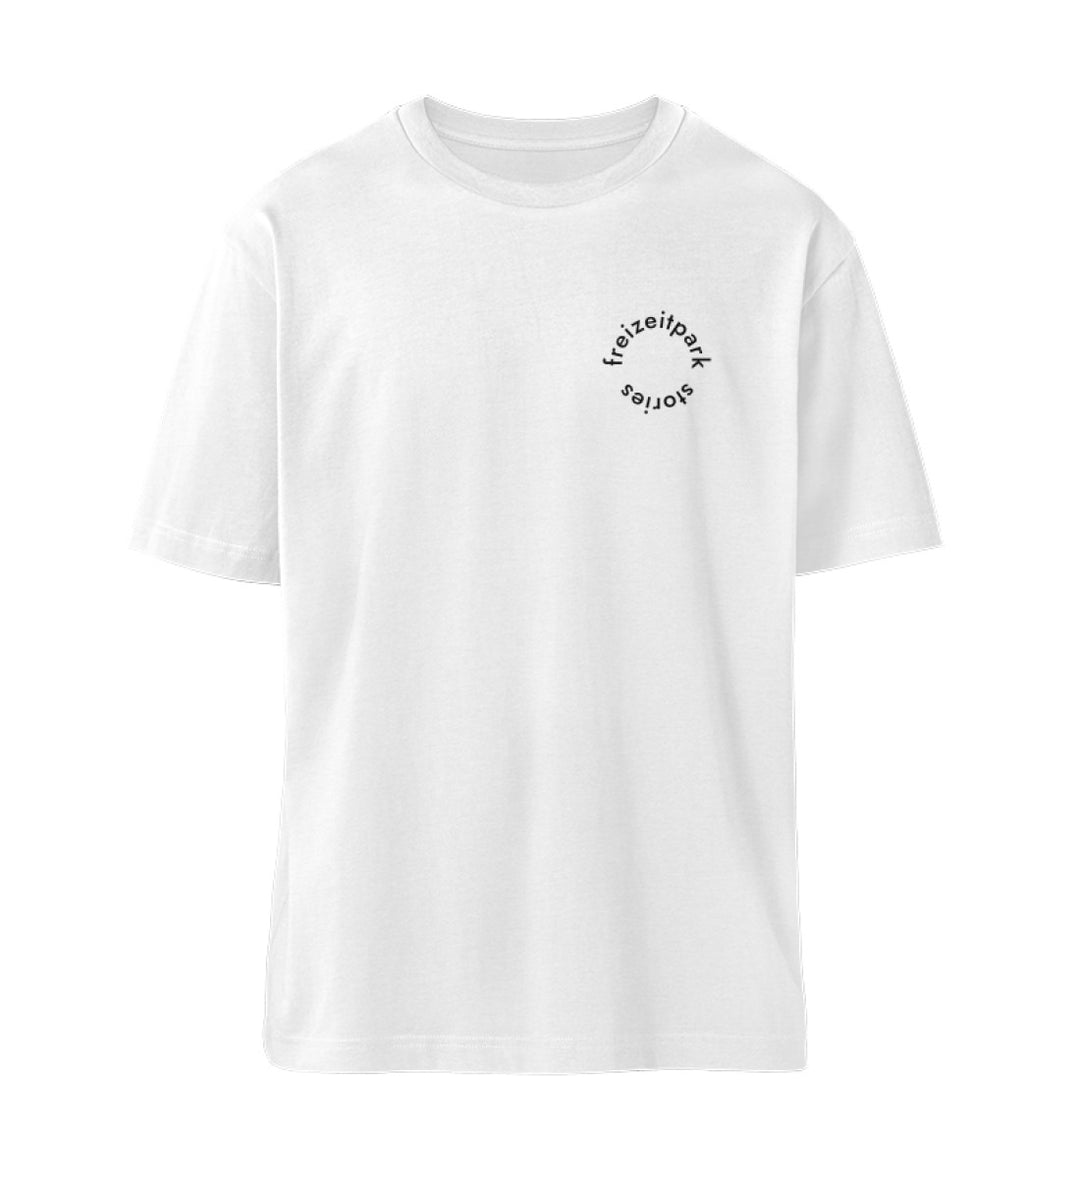 White V Locator T-shirt